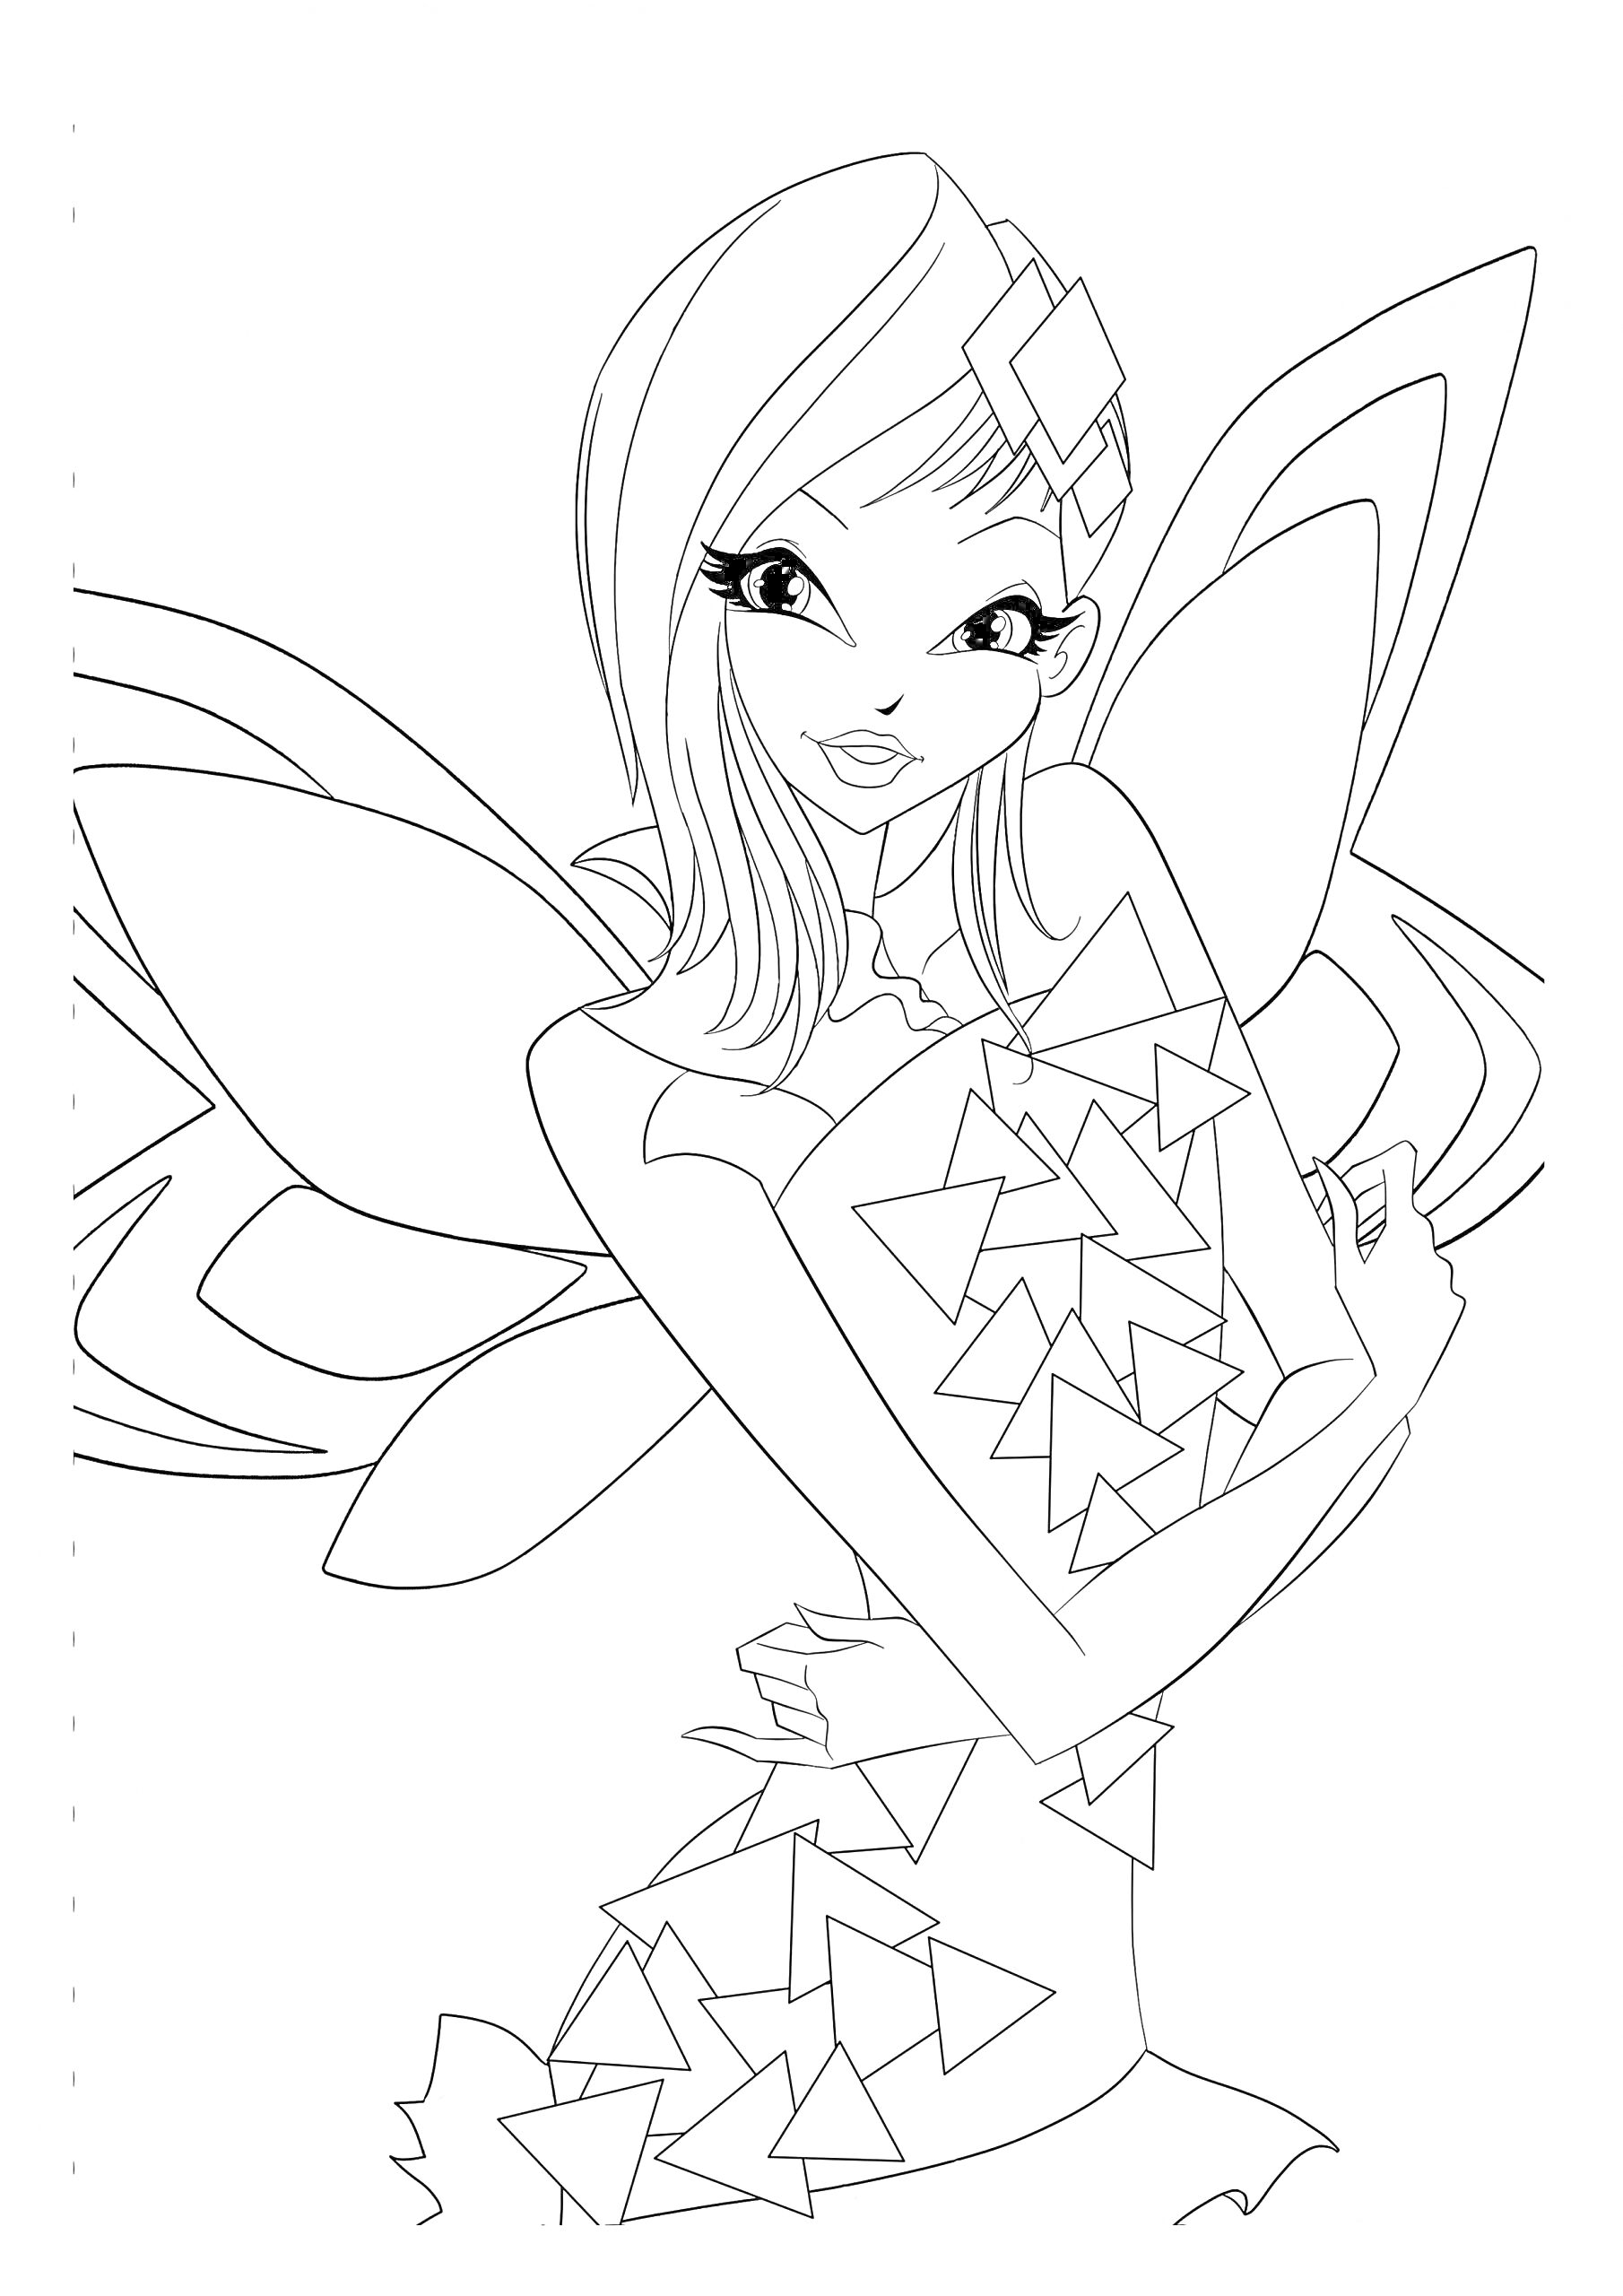 Раскраска Фея Винкс Тайникс с крыльями и платьем с узором из треугольников